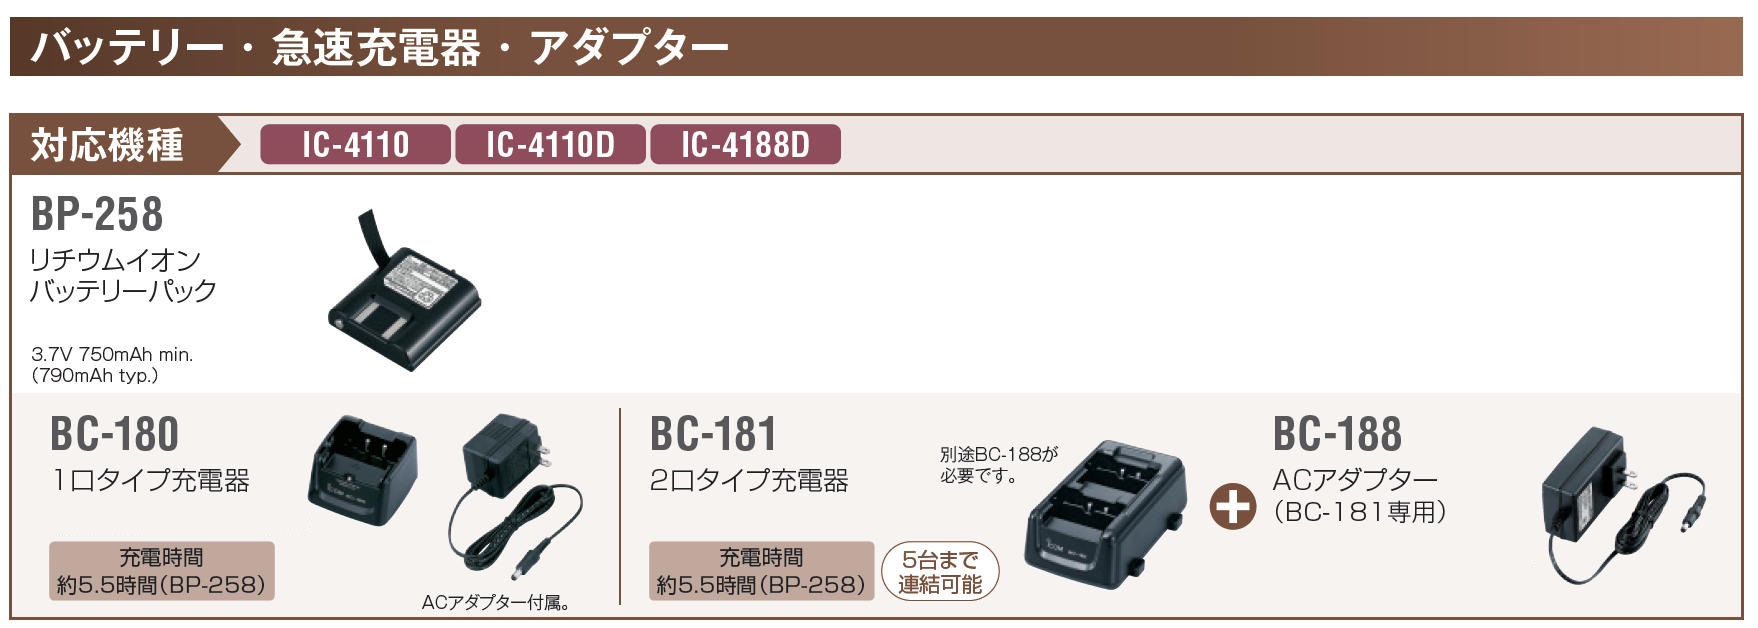 ICOM IC-4188D(×2)+BP-258 バッテリー(×2)+BC-181 充電器+BC-188 ACアダプター